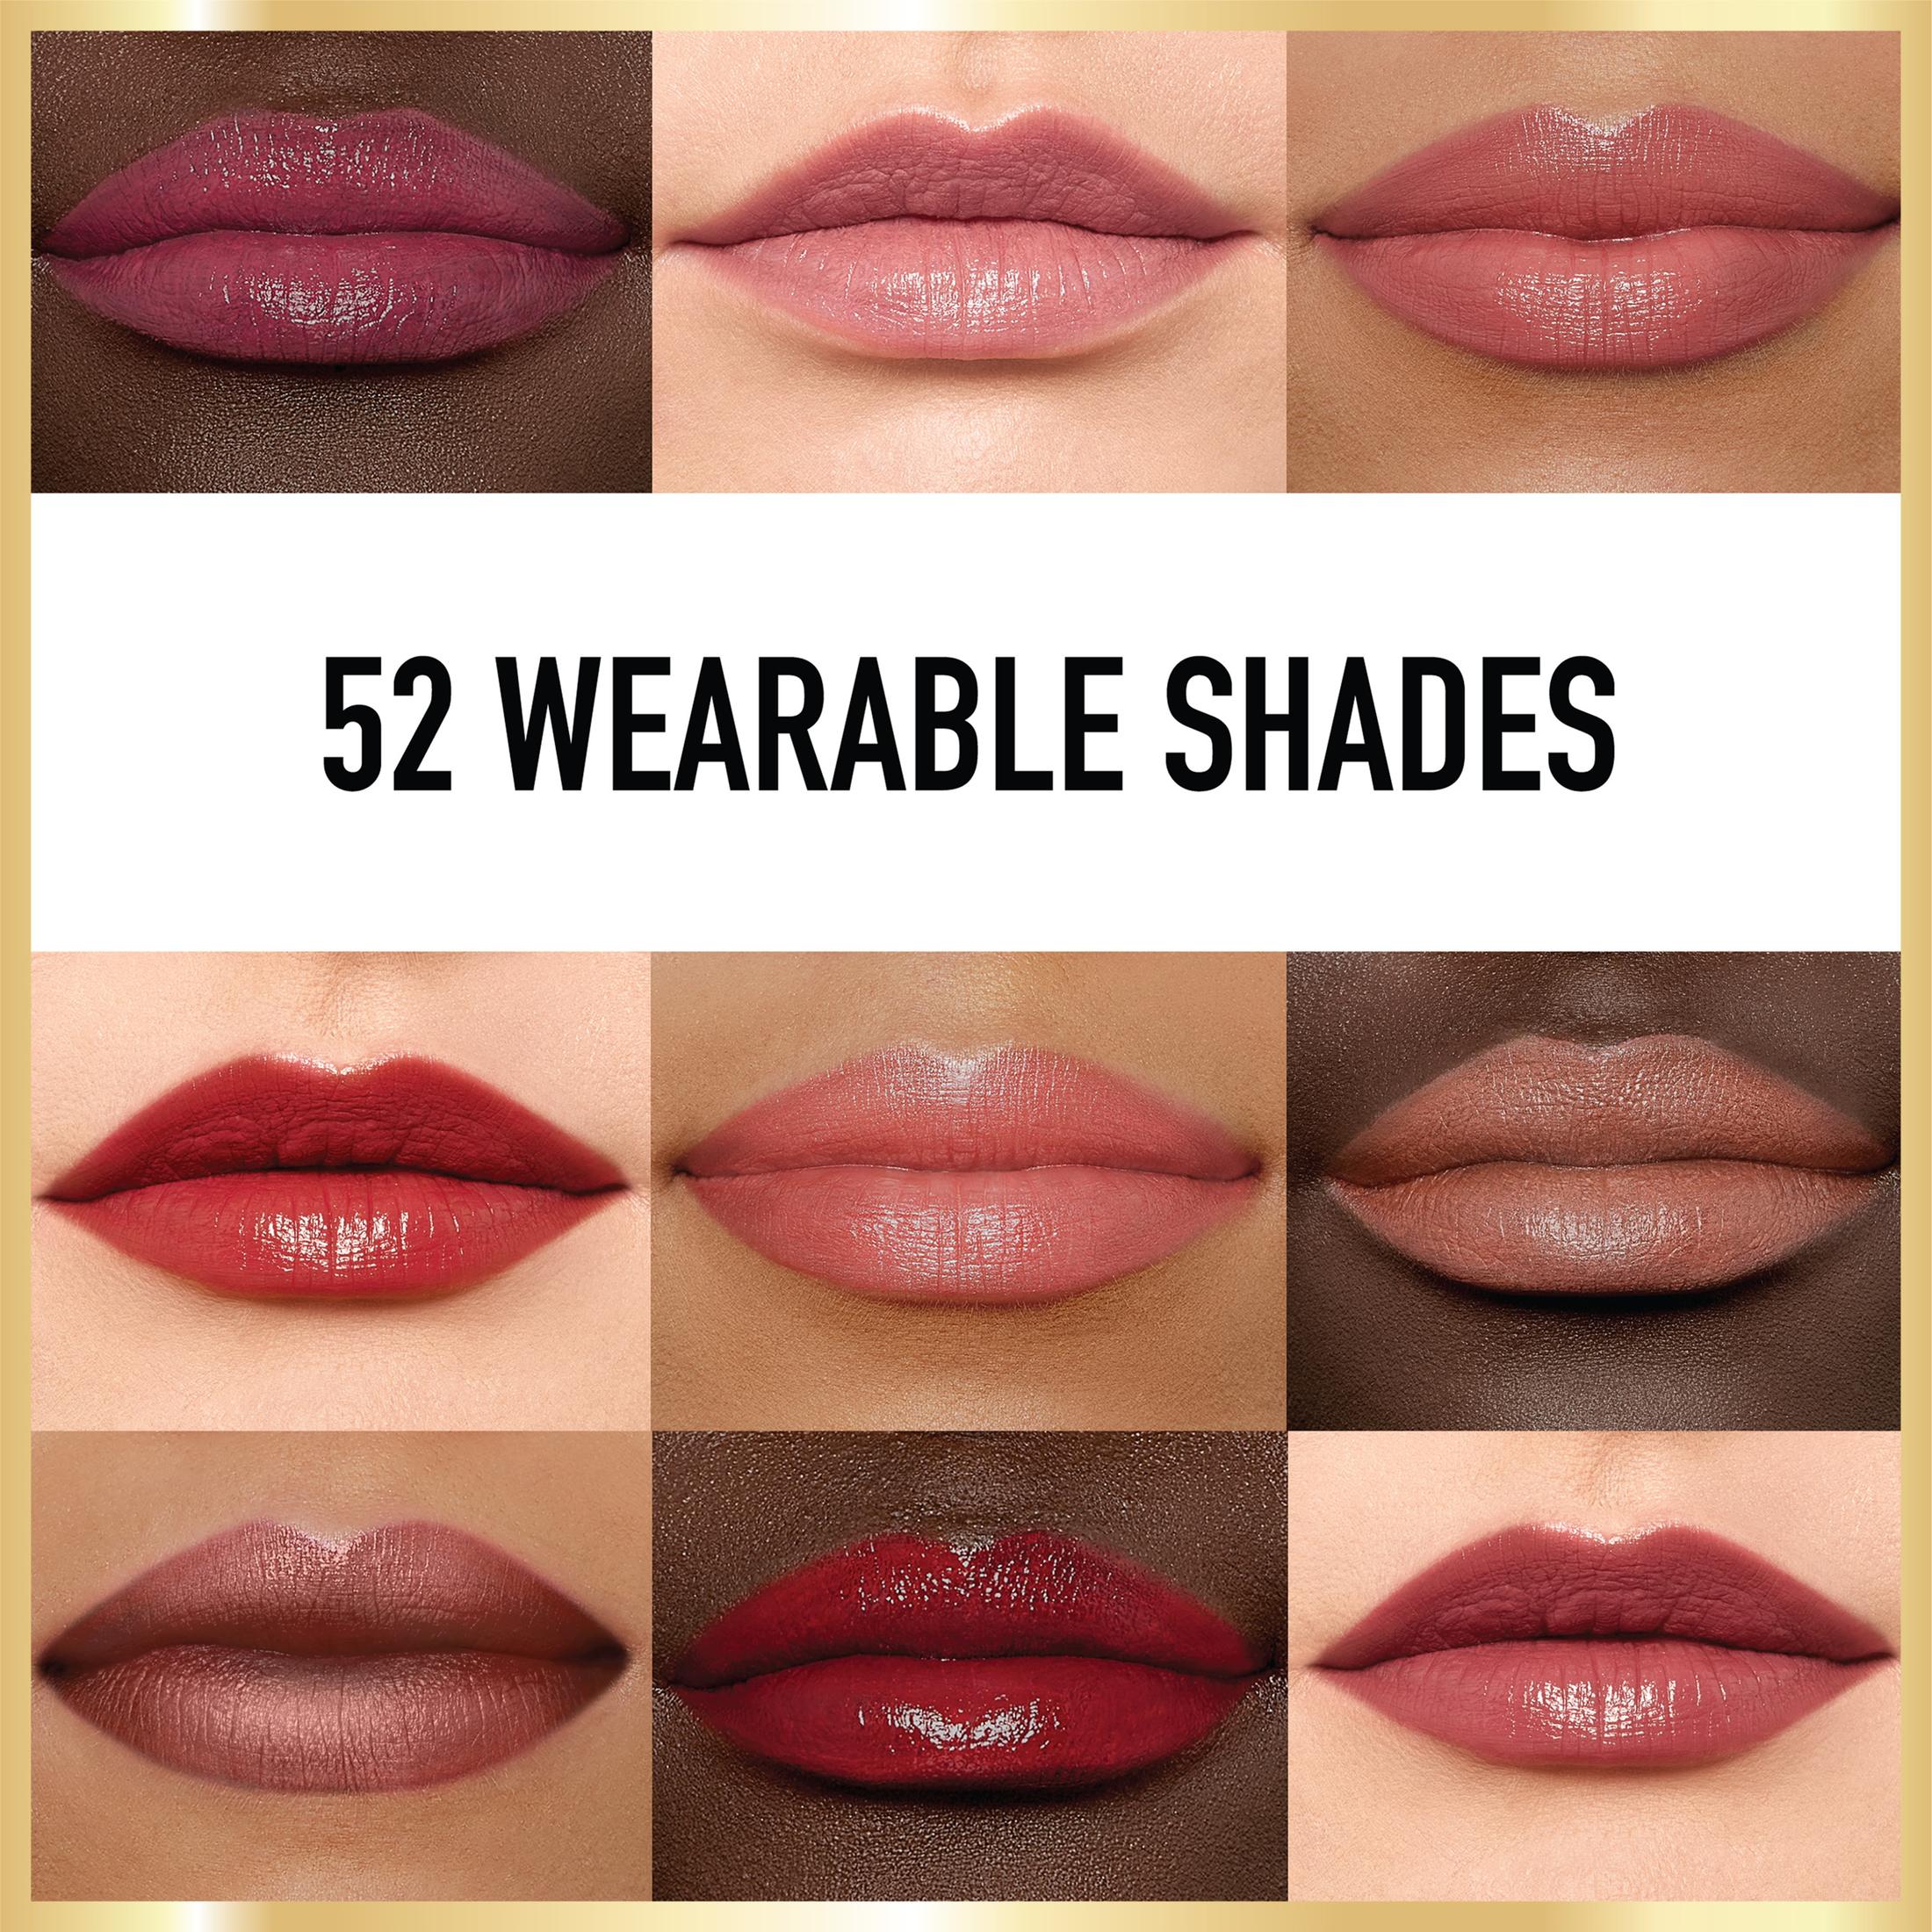 L'Oreal Paris Colour Riche Original Satin Lipstick for Moisturized Lips, 800 Fairest Nude - image 4 of 5